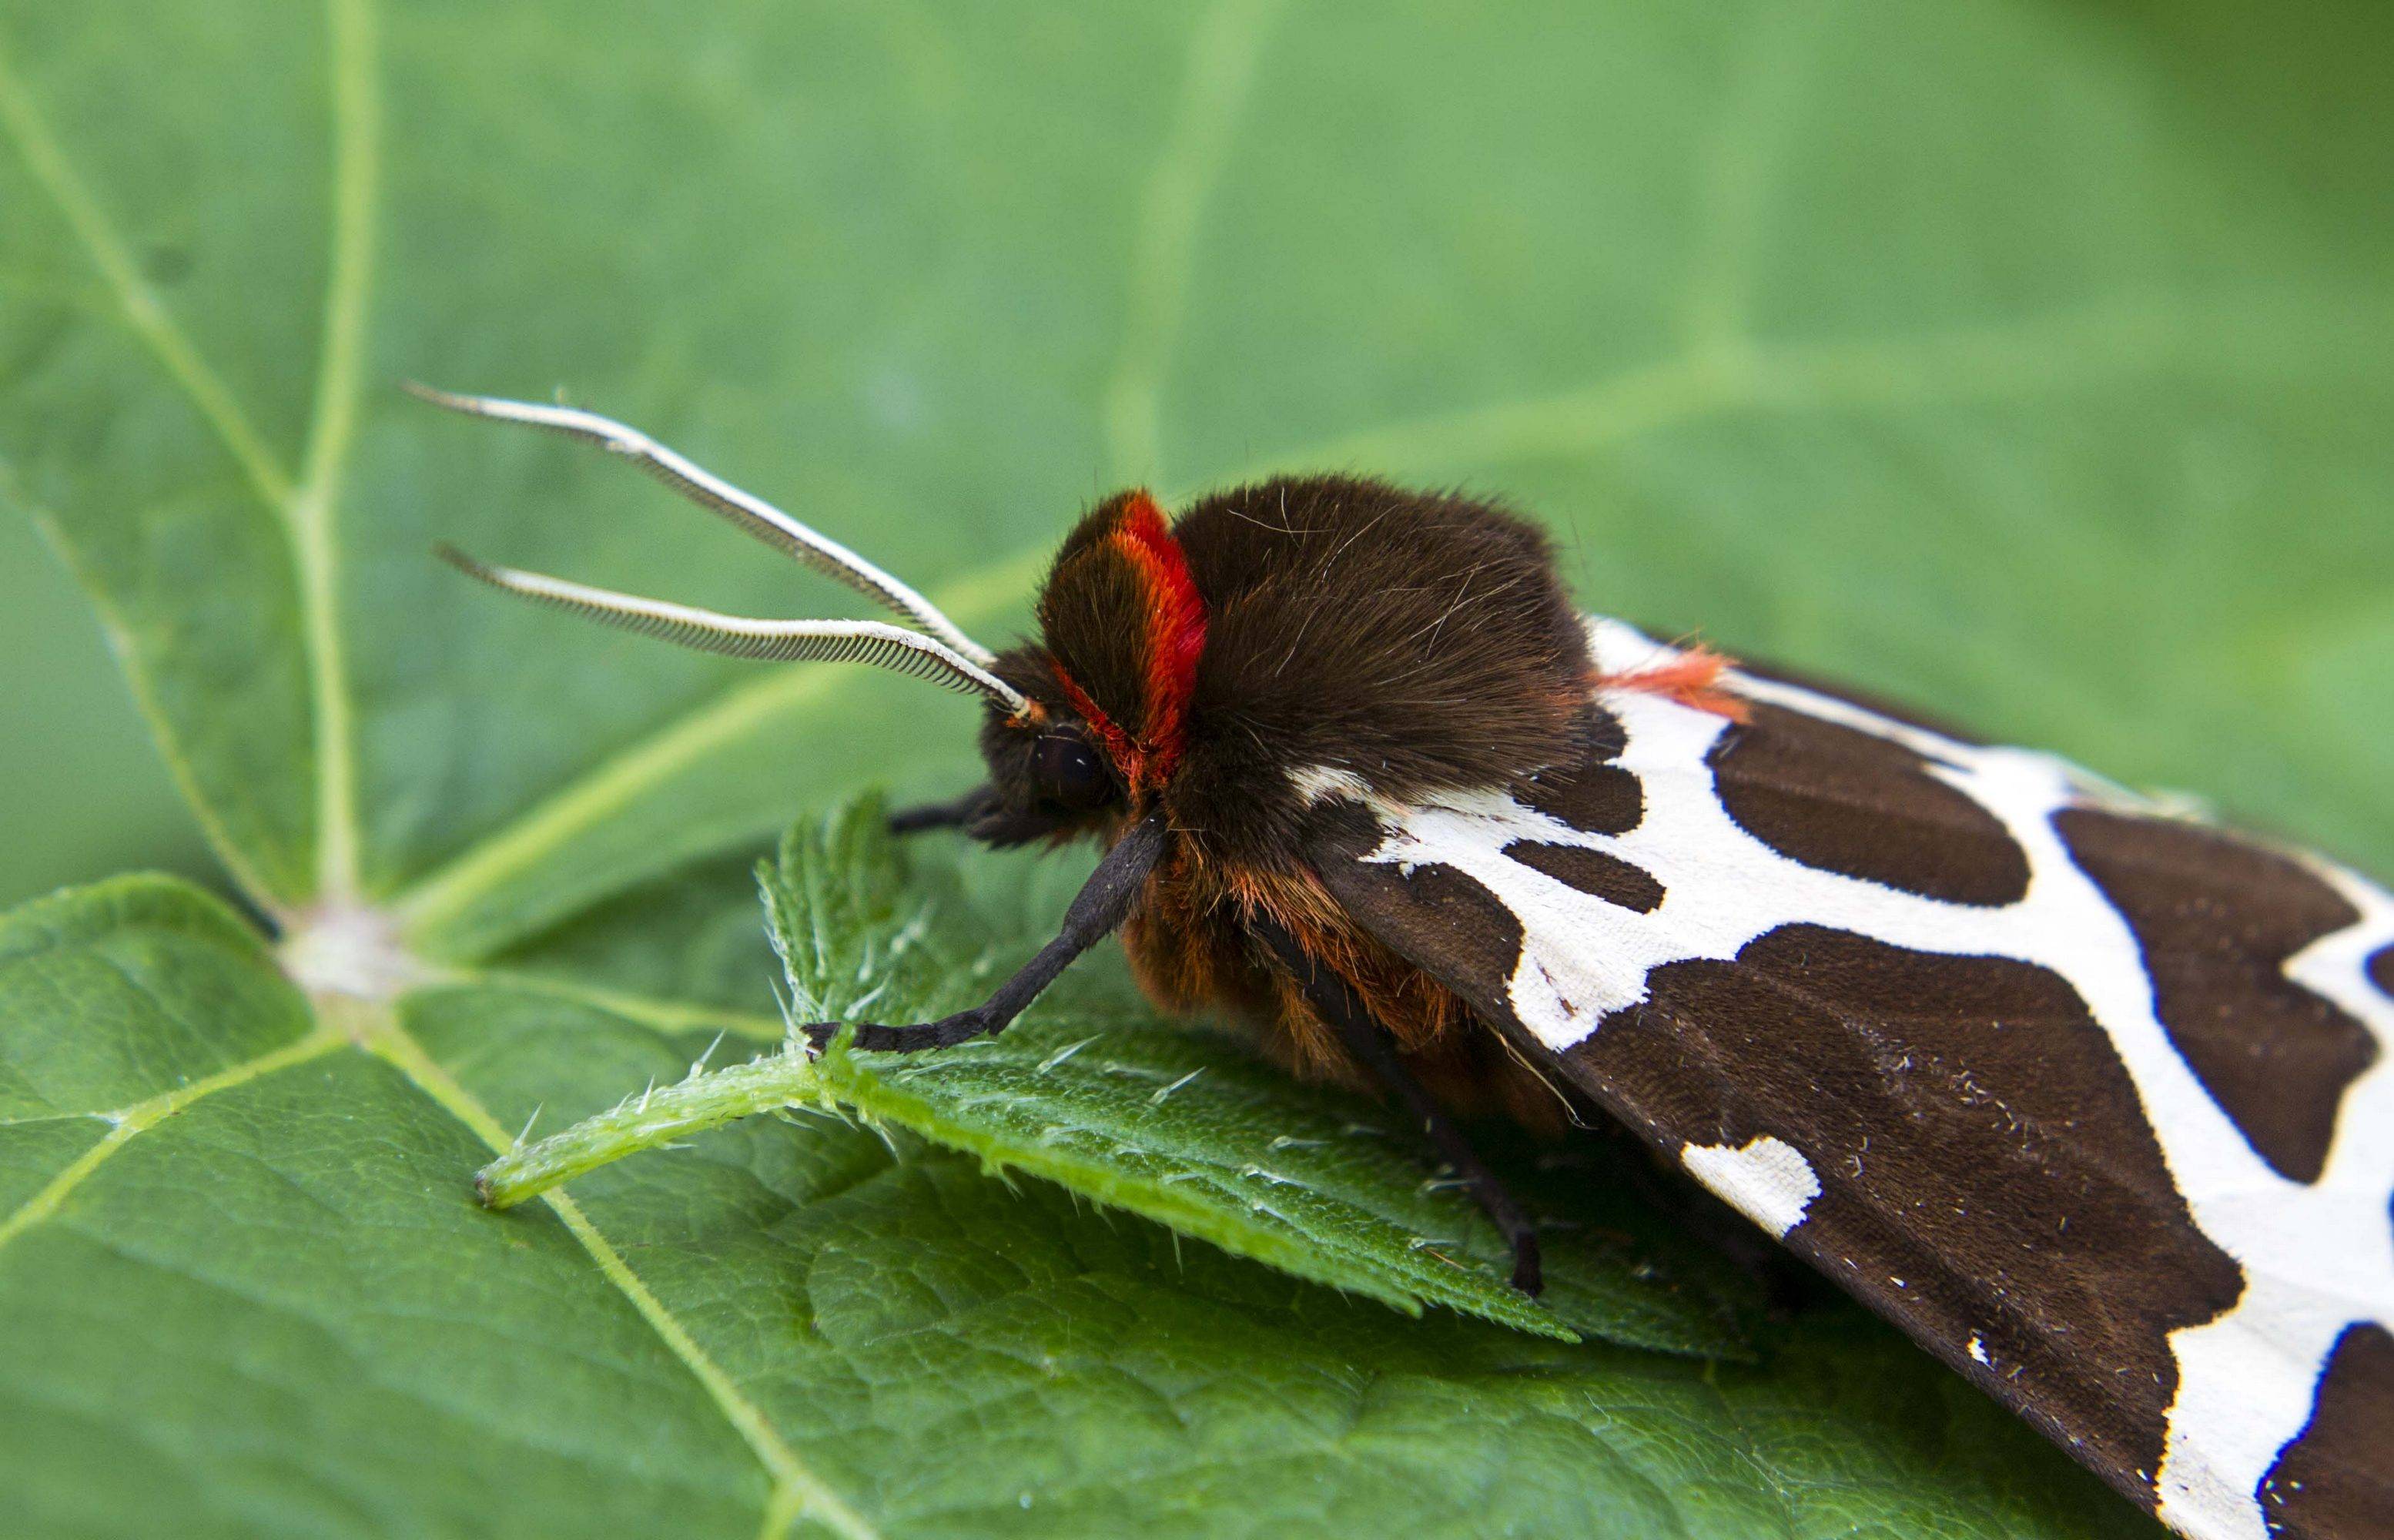 Бабочки сибири: фото и интересные факты — блог милы